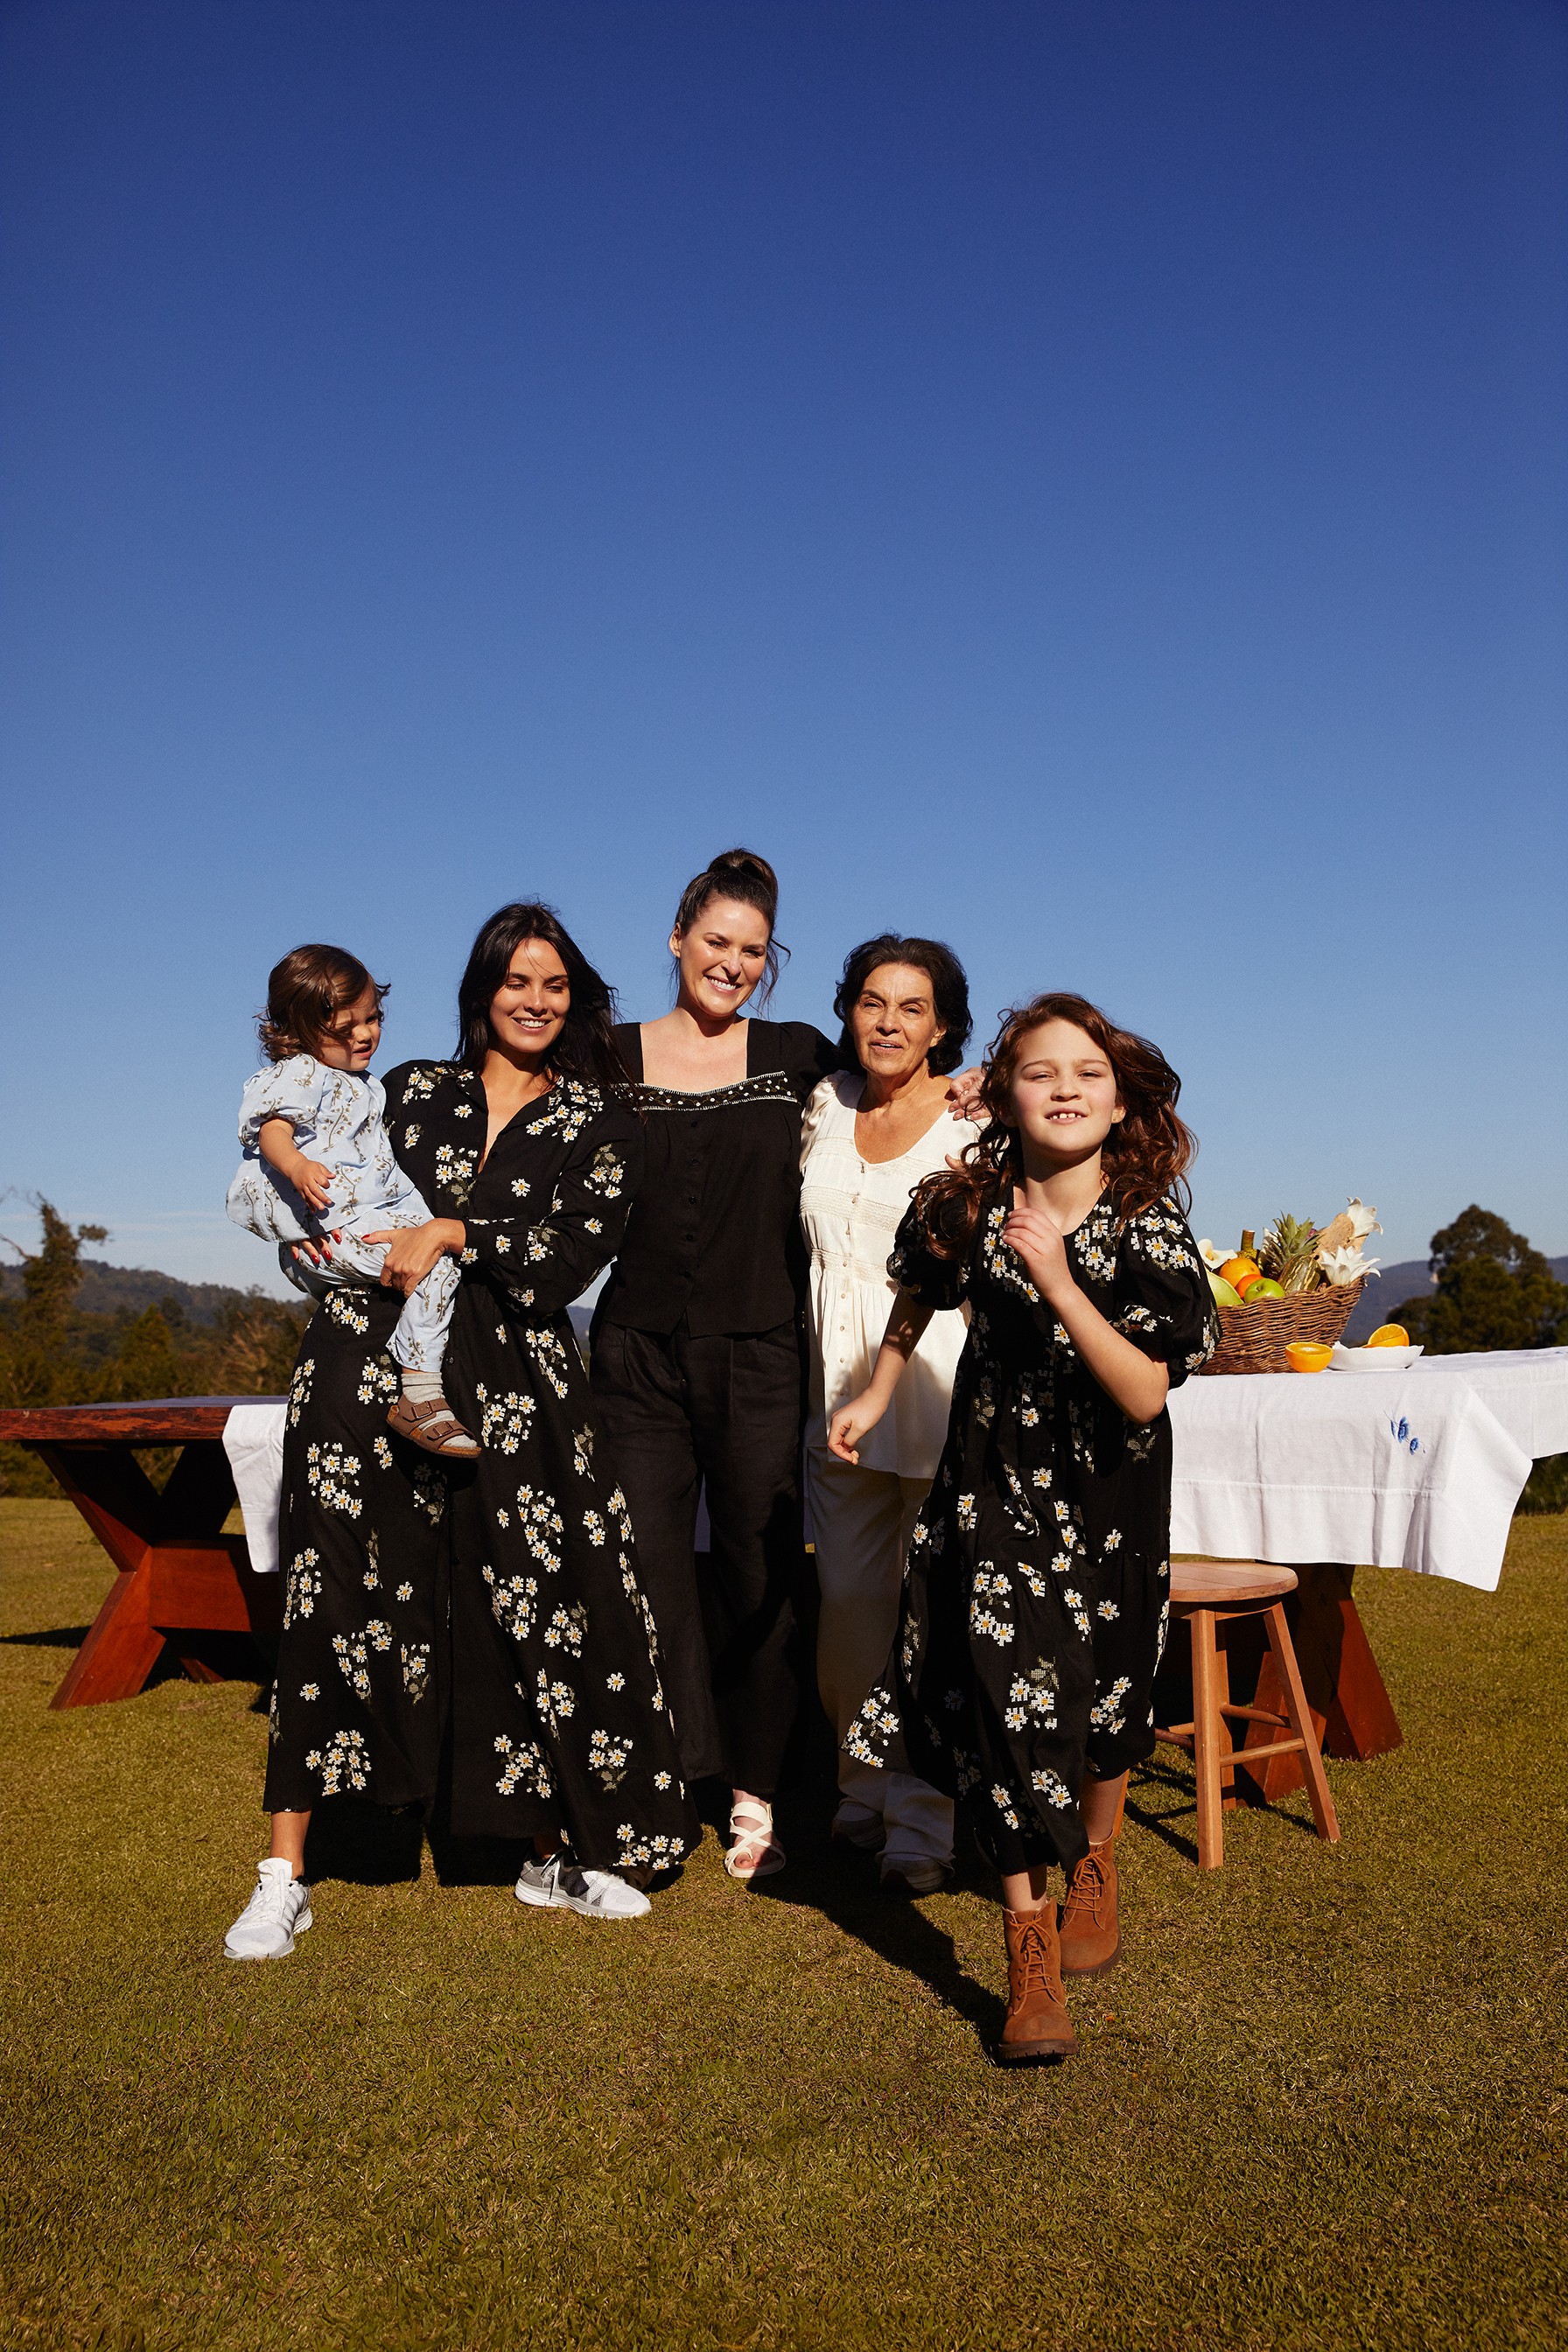 Cris lança cápsula Margaritas com fotos exclusivas com sua família (Foto: Divulgação)